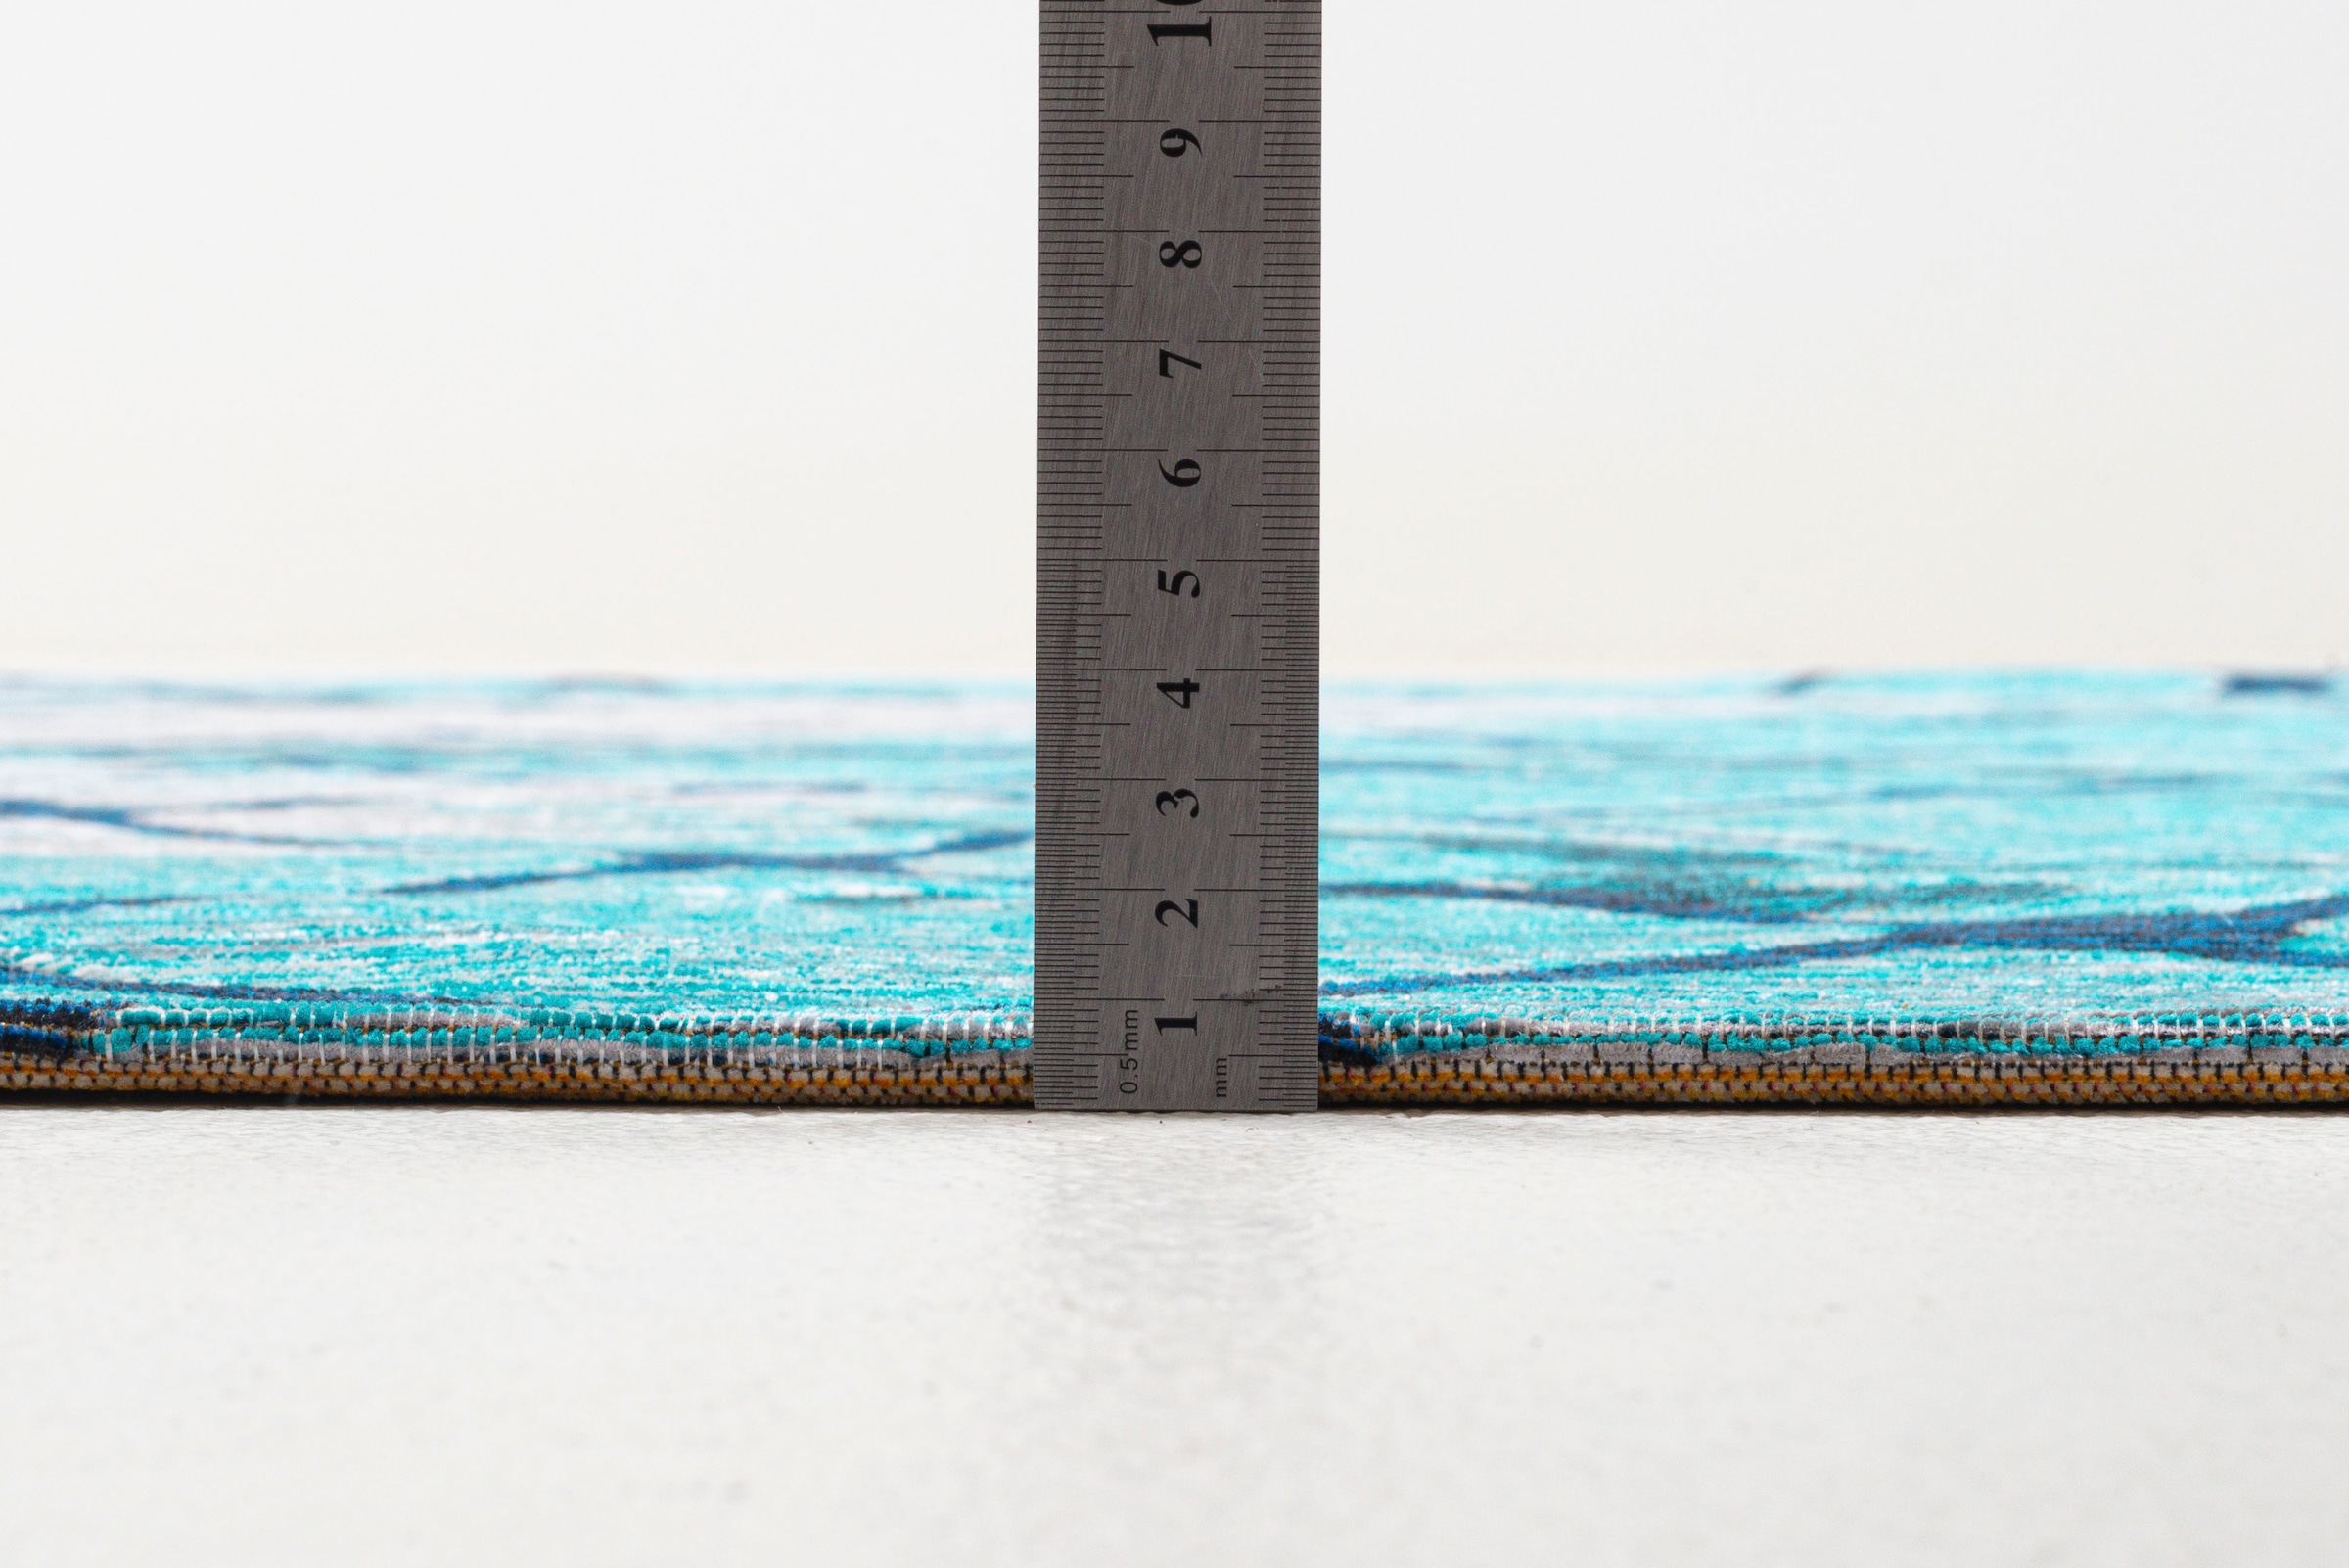 Sansibar Teppich »Keitum 005«, rechteckig, Flachgewebe, modernes Design, Motiv Fischernetz & gekreuzte Säbel